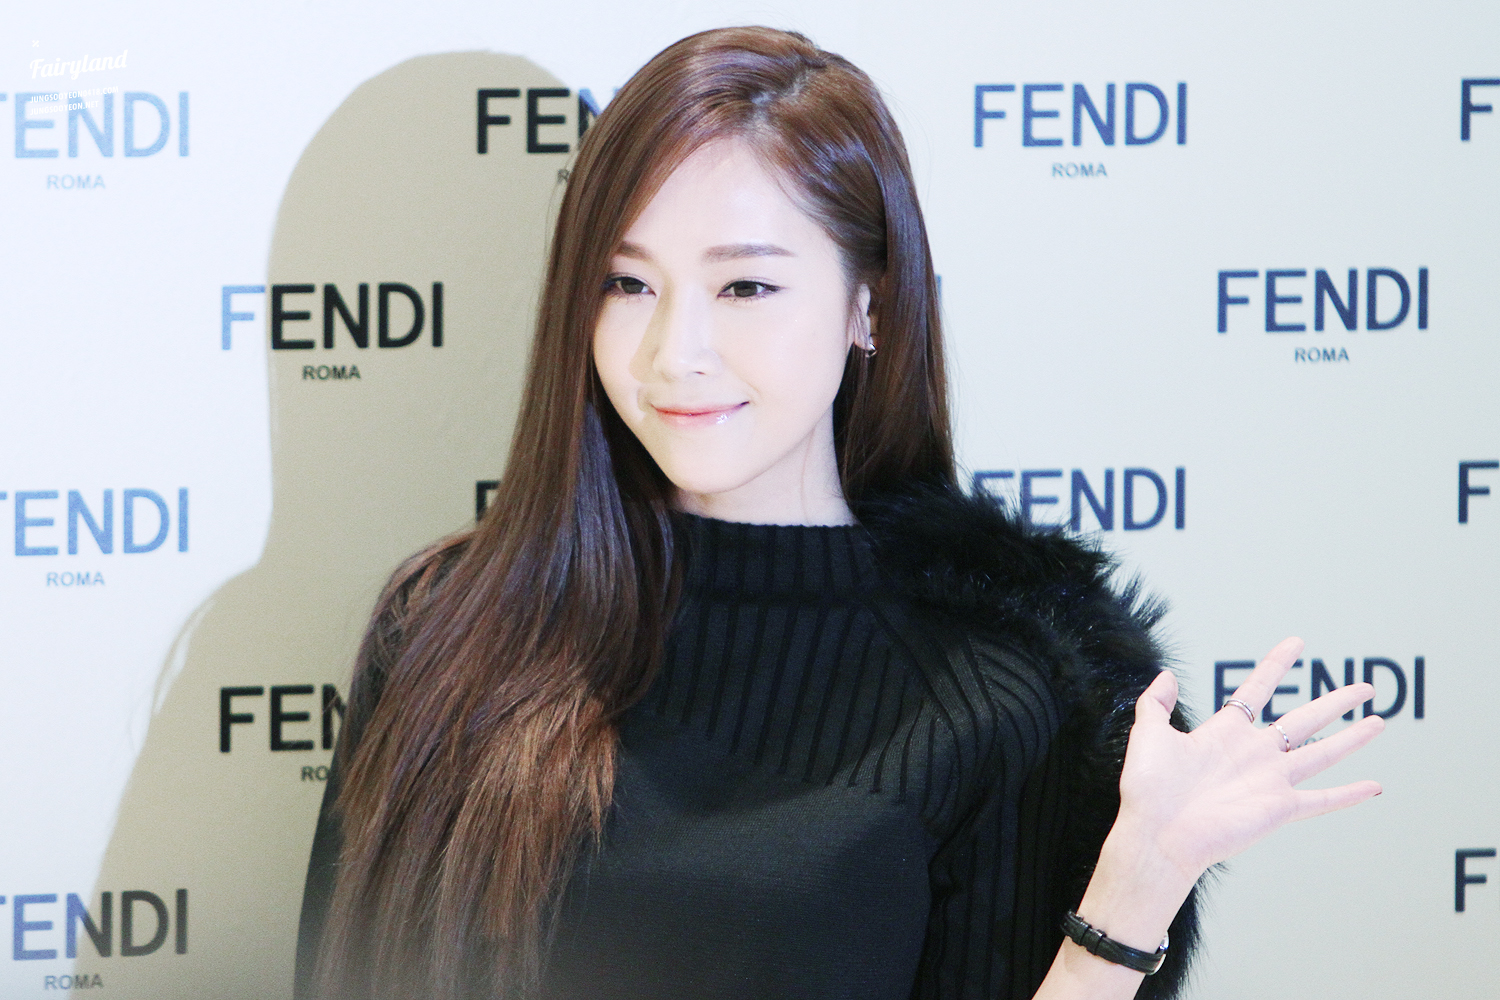 [PIC][24-11-2014]Jessica tham dự sự kiện khai trương cửa hàng "Fendi" tại Lotte World - Seoul vào chiều nay 2423024254747191285ECB